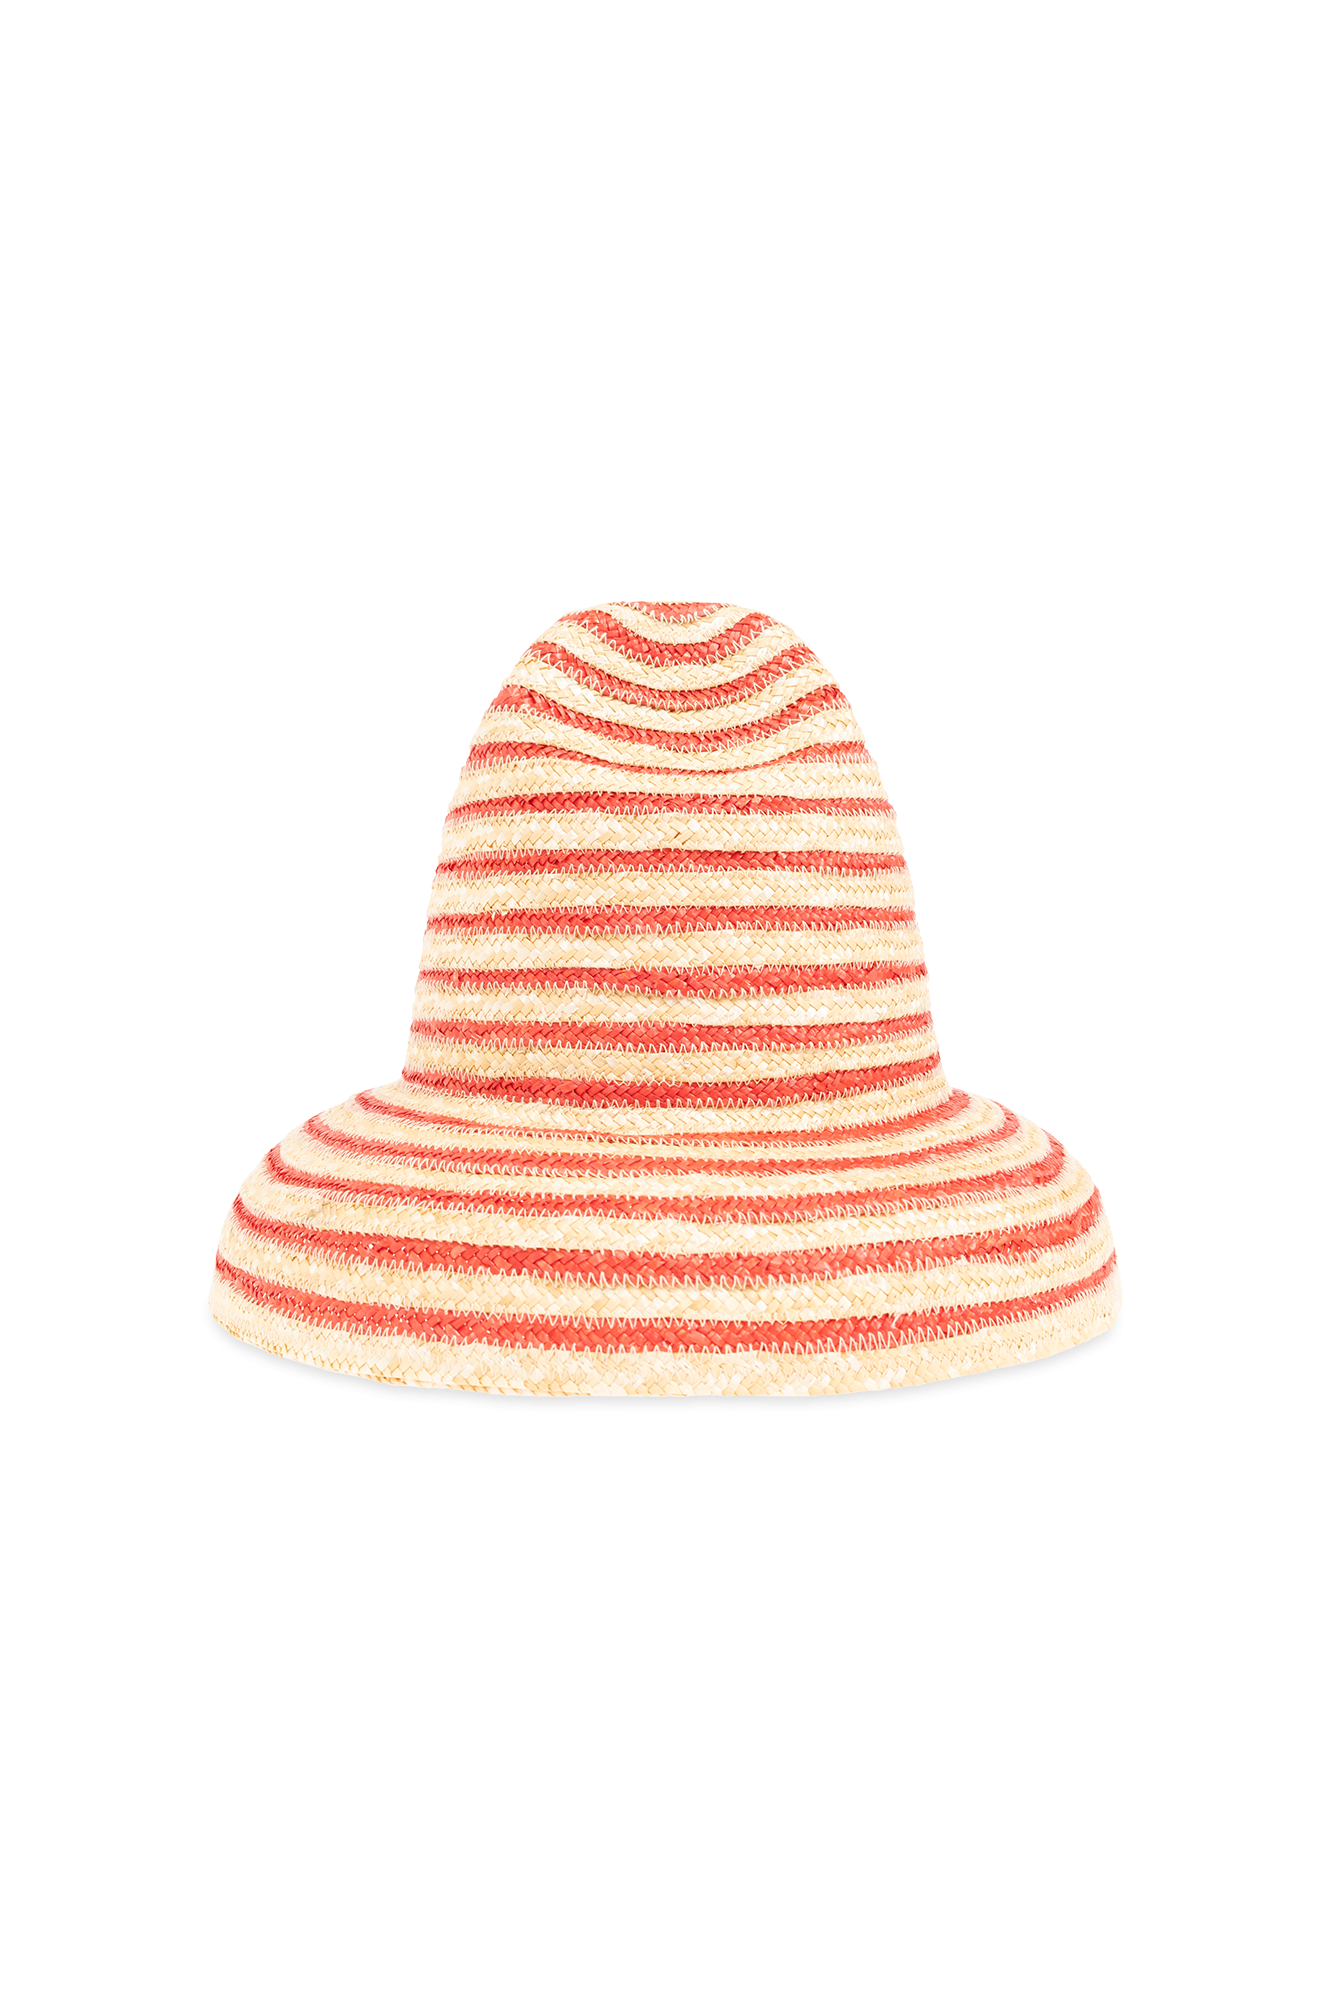 Cult Gaia ‘Magda’ straw hat